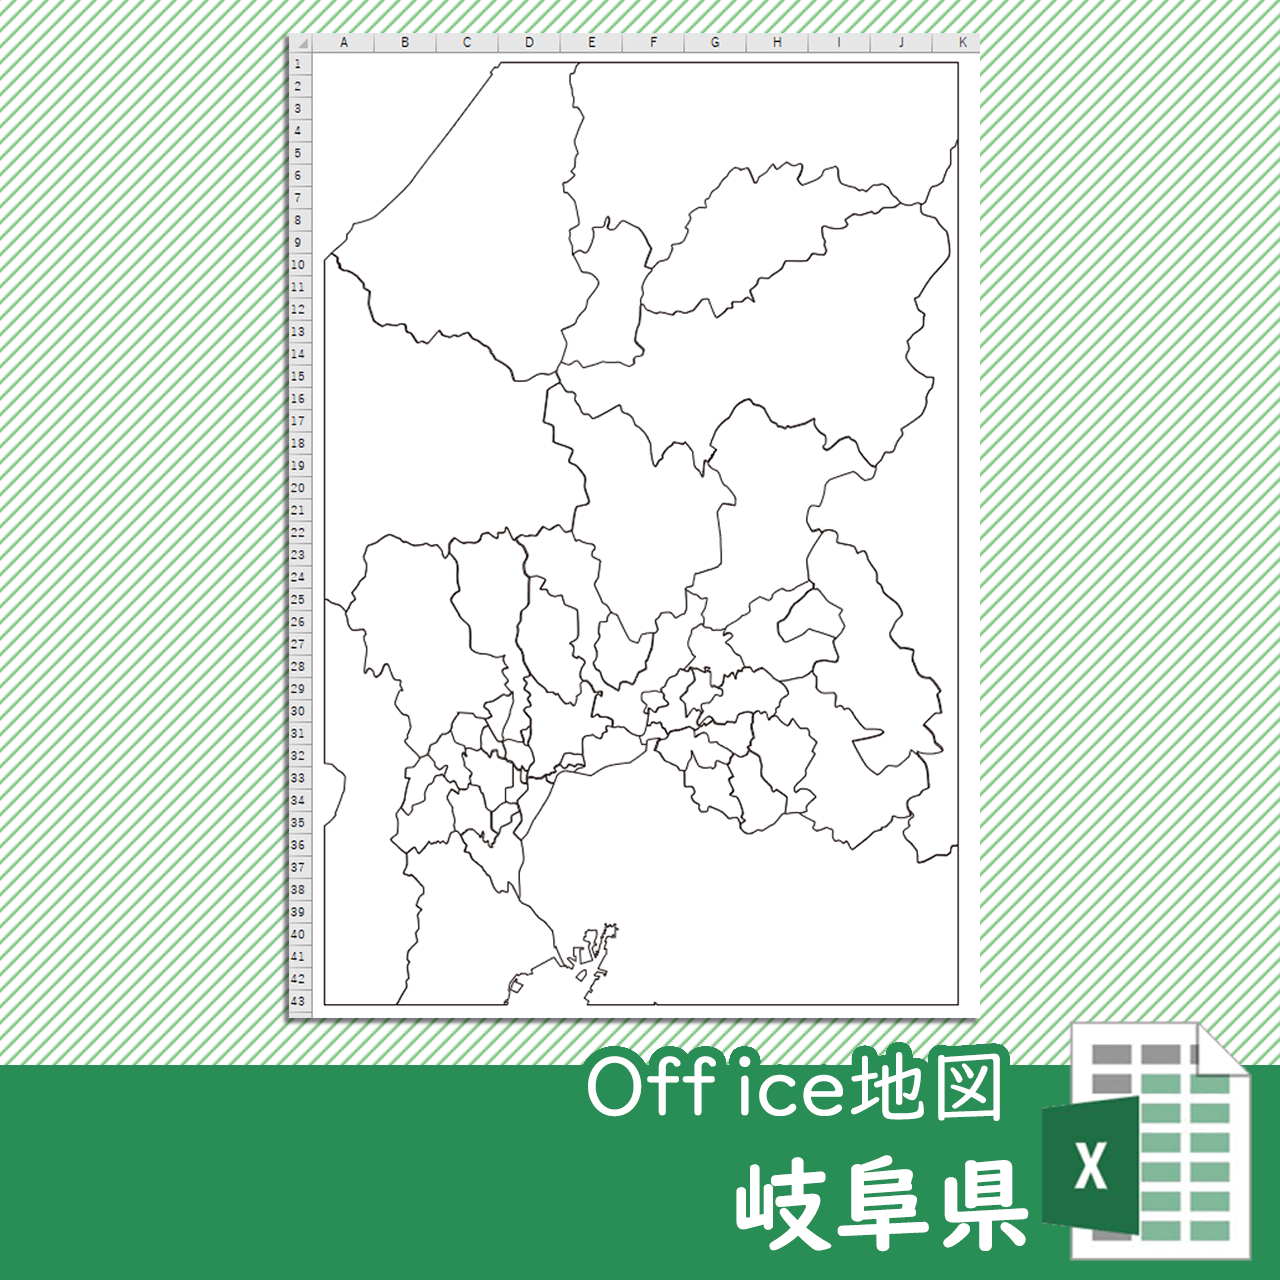 岐阜県のOffice地図のサムネイル